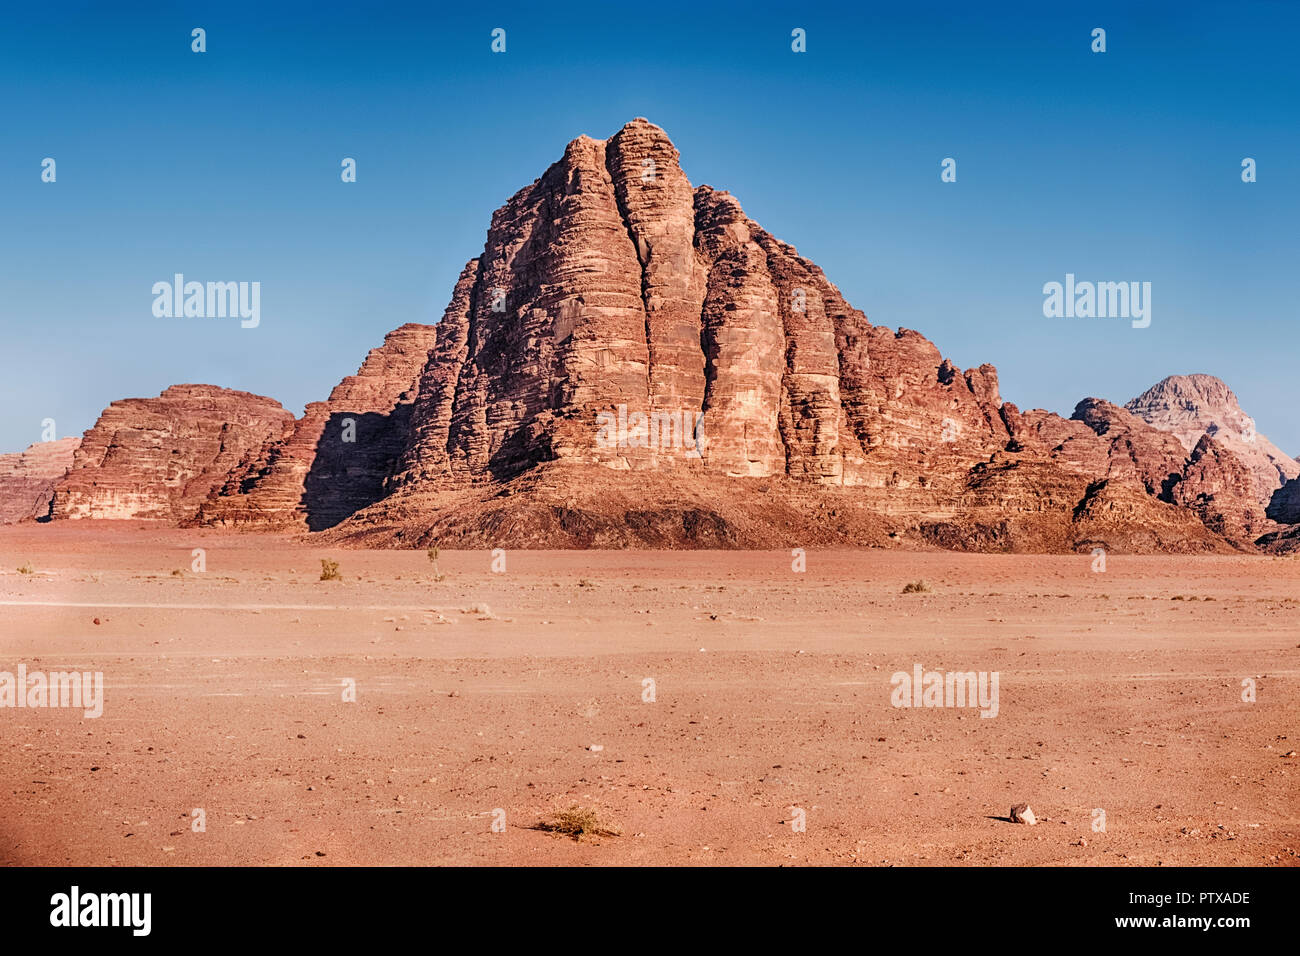 Dans le désert de Wadi Rum Jordanie du Sud, le paysage est dominé par les falaises et les contreforts de la montagne des sept piliers. Banque D'Images